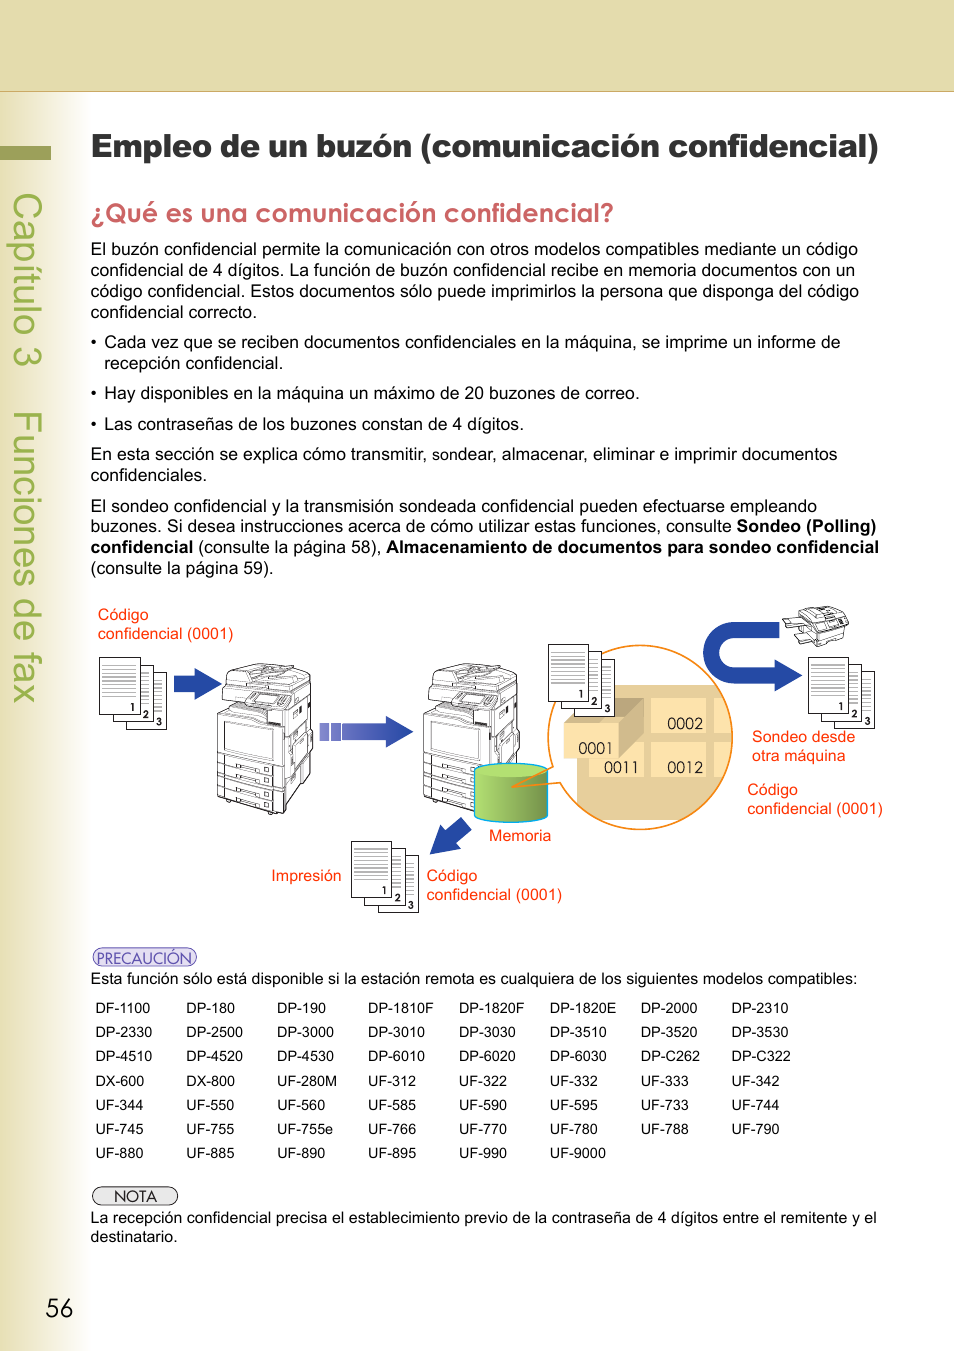 Empleo de un buzón (comunicación confidencial), Qué es una comunicación confidencial, Capítulo 3 funciones de fax | Panasonic DPC322 Manual del usuario | Página 56 / 218